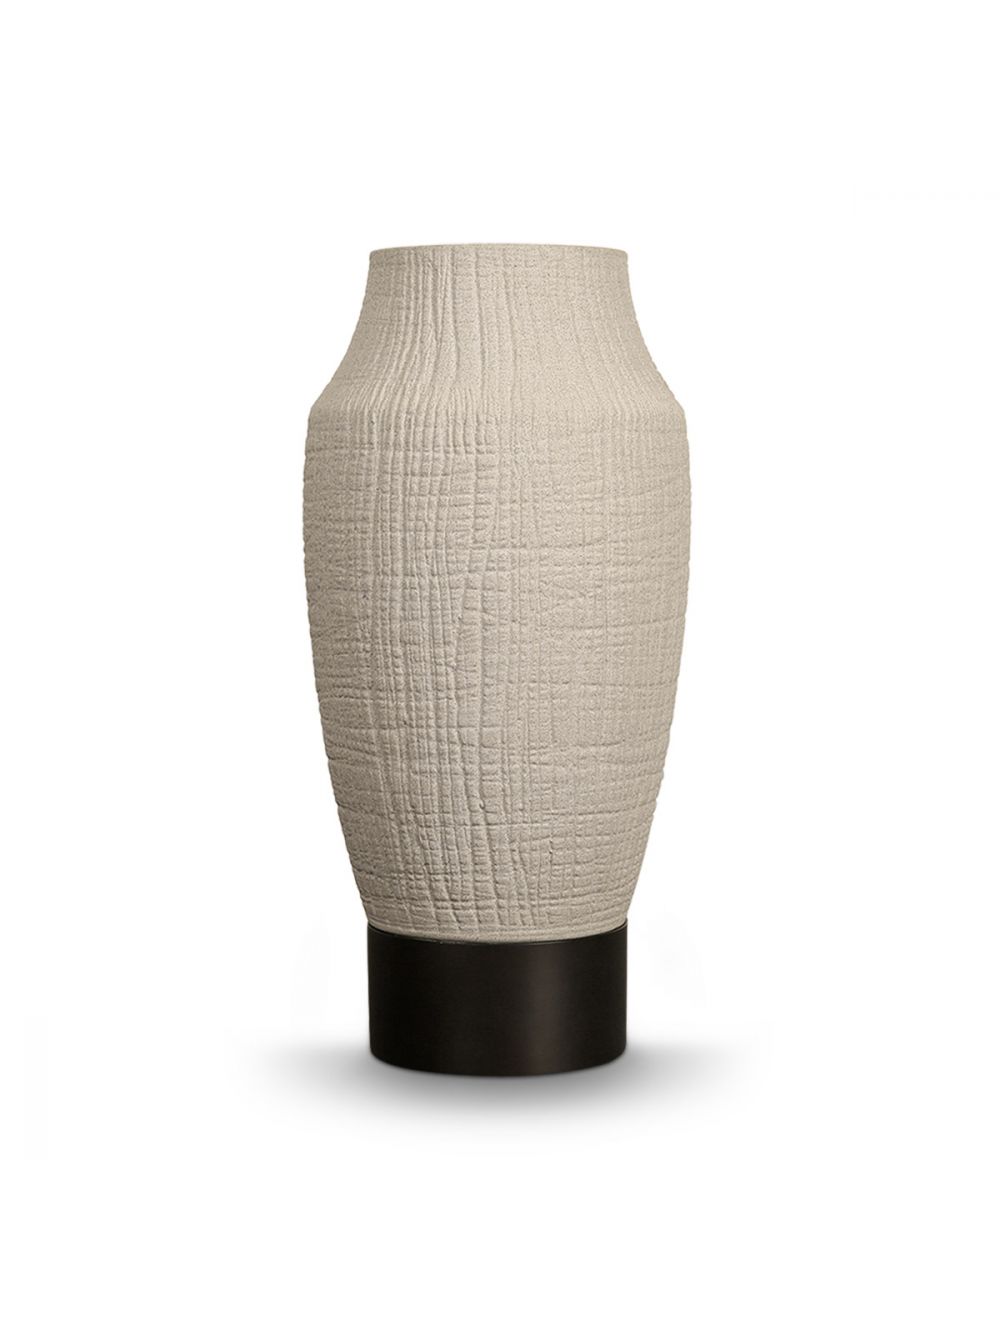 Trevar Ceramic Vase